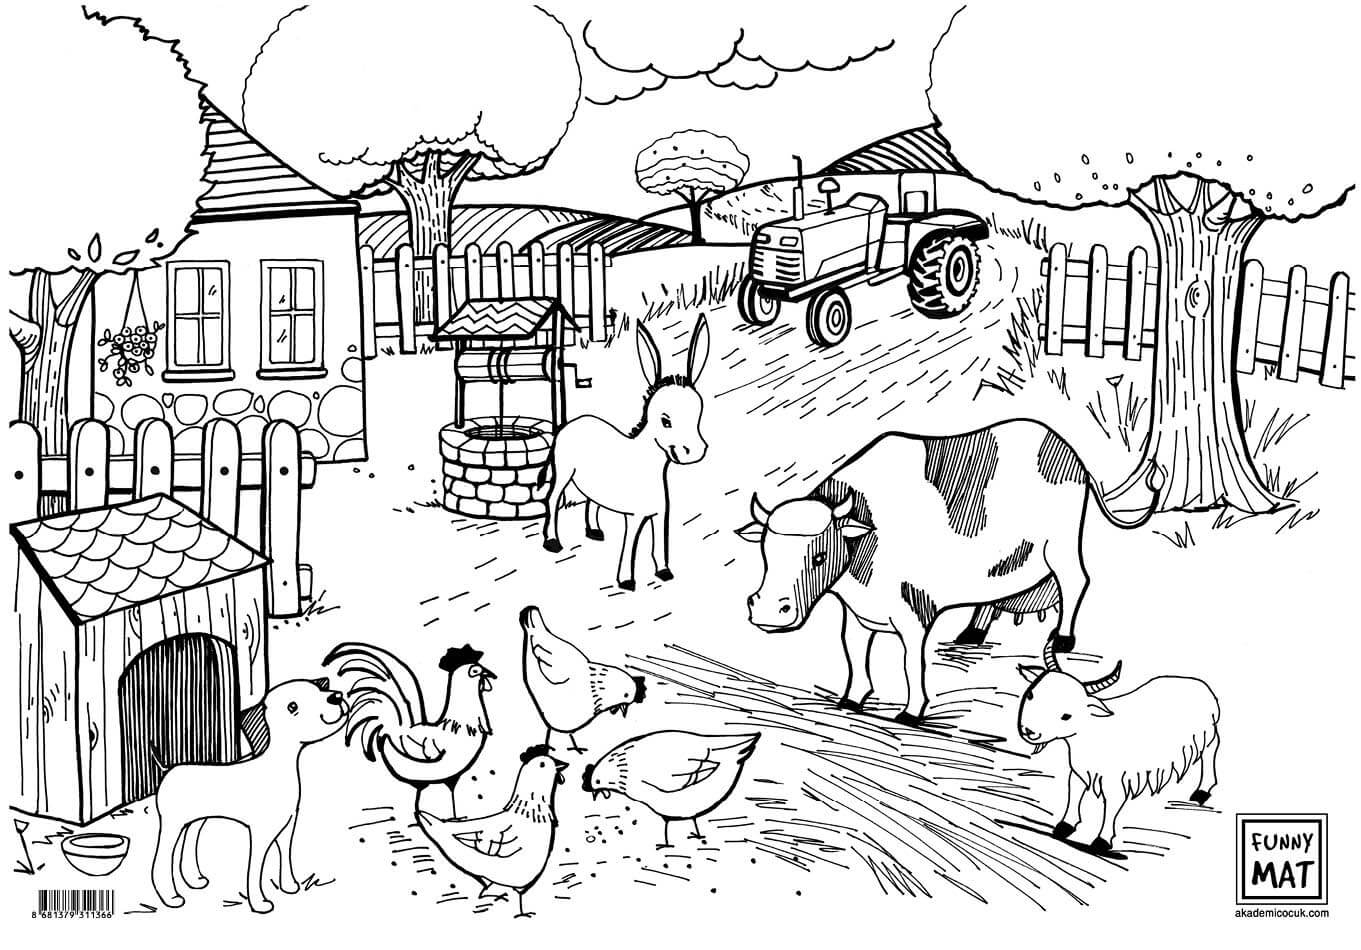 expand Lying Perceivable Planse, fise si imagini de colorat pentru copii animale viata la ferma.